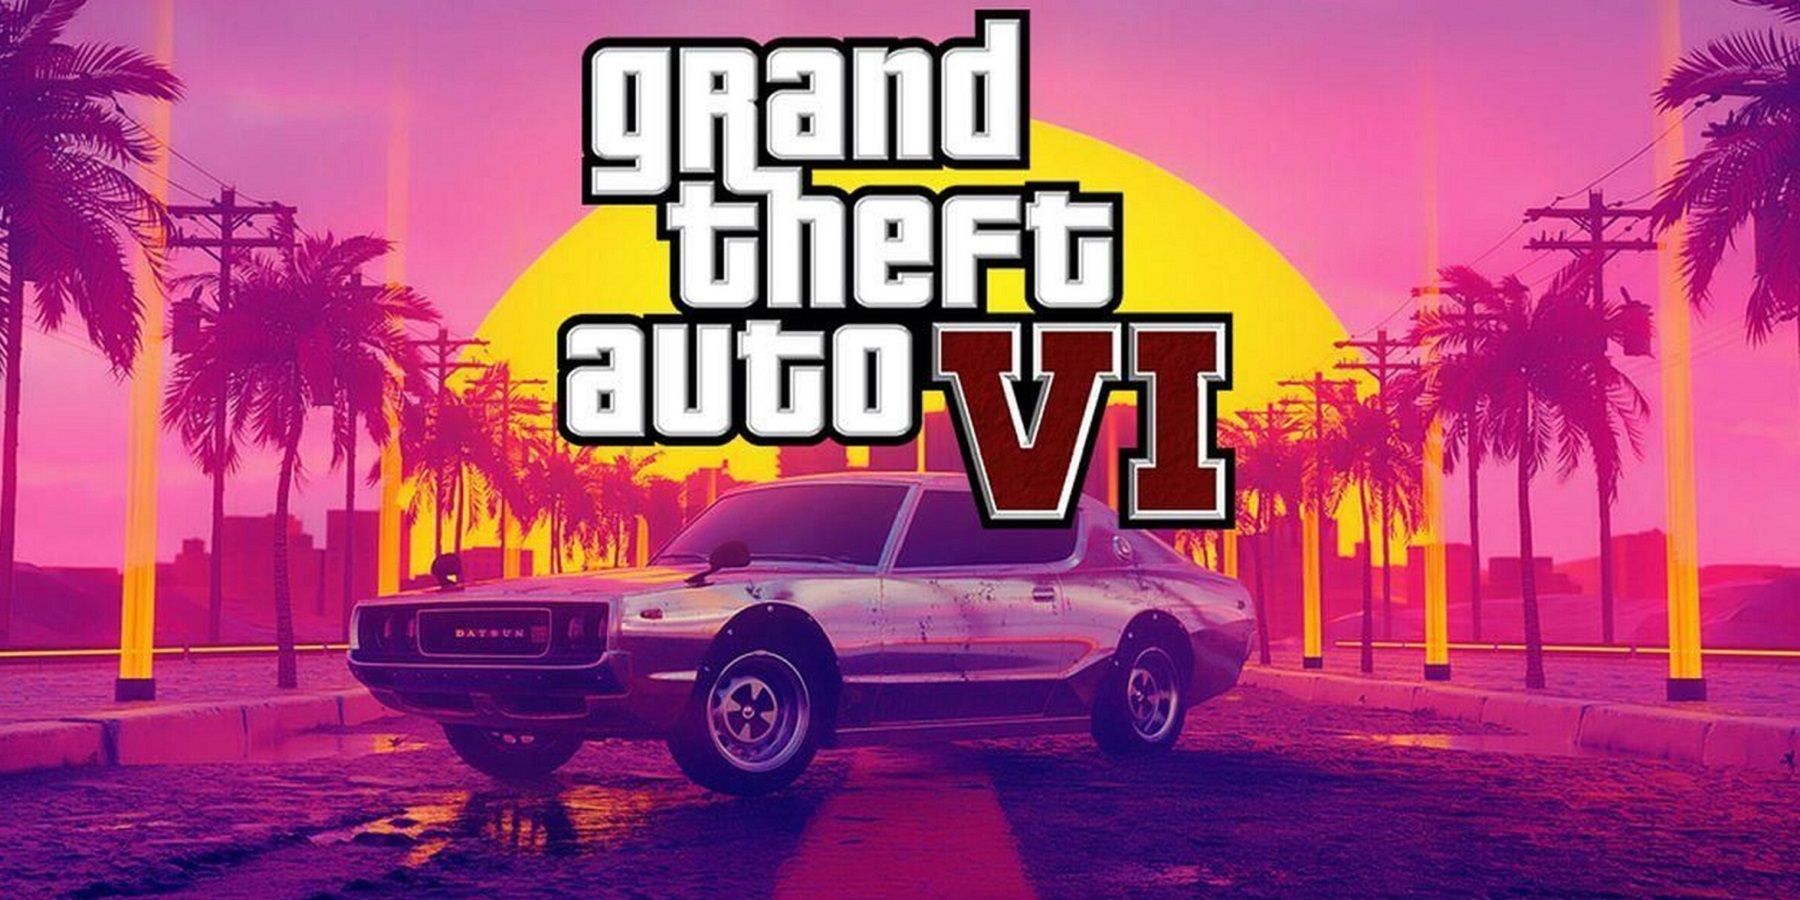 Изображение-макет, показывающее причудливый автомобиль под логотипом Grand Theft Auto 6.